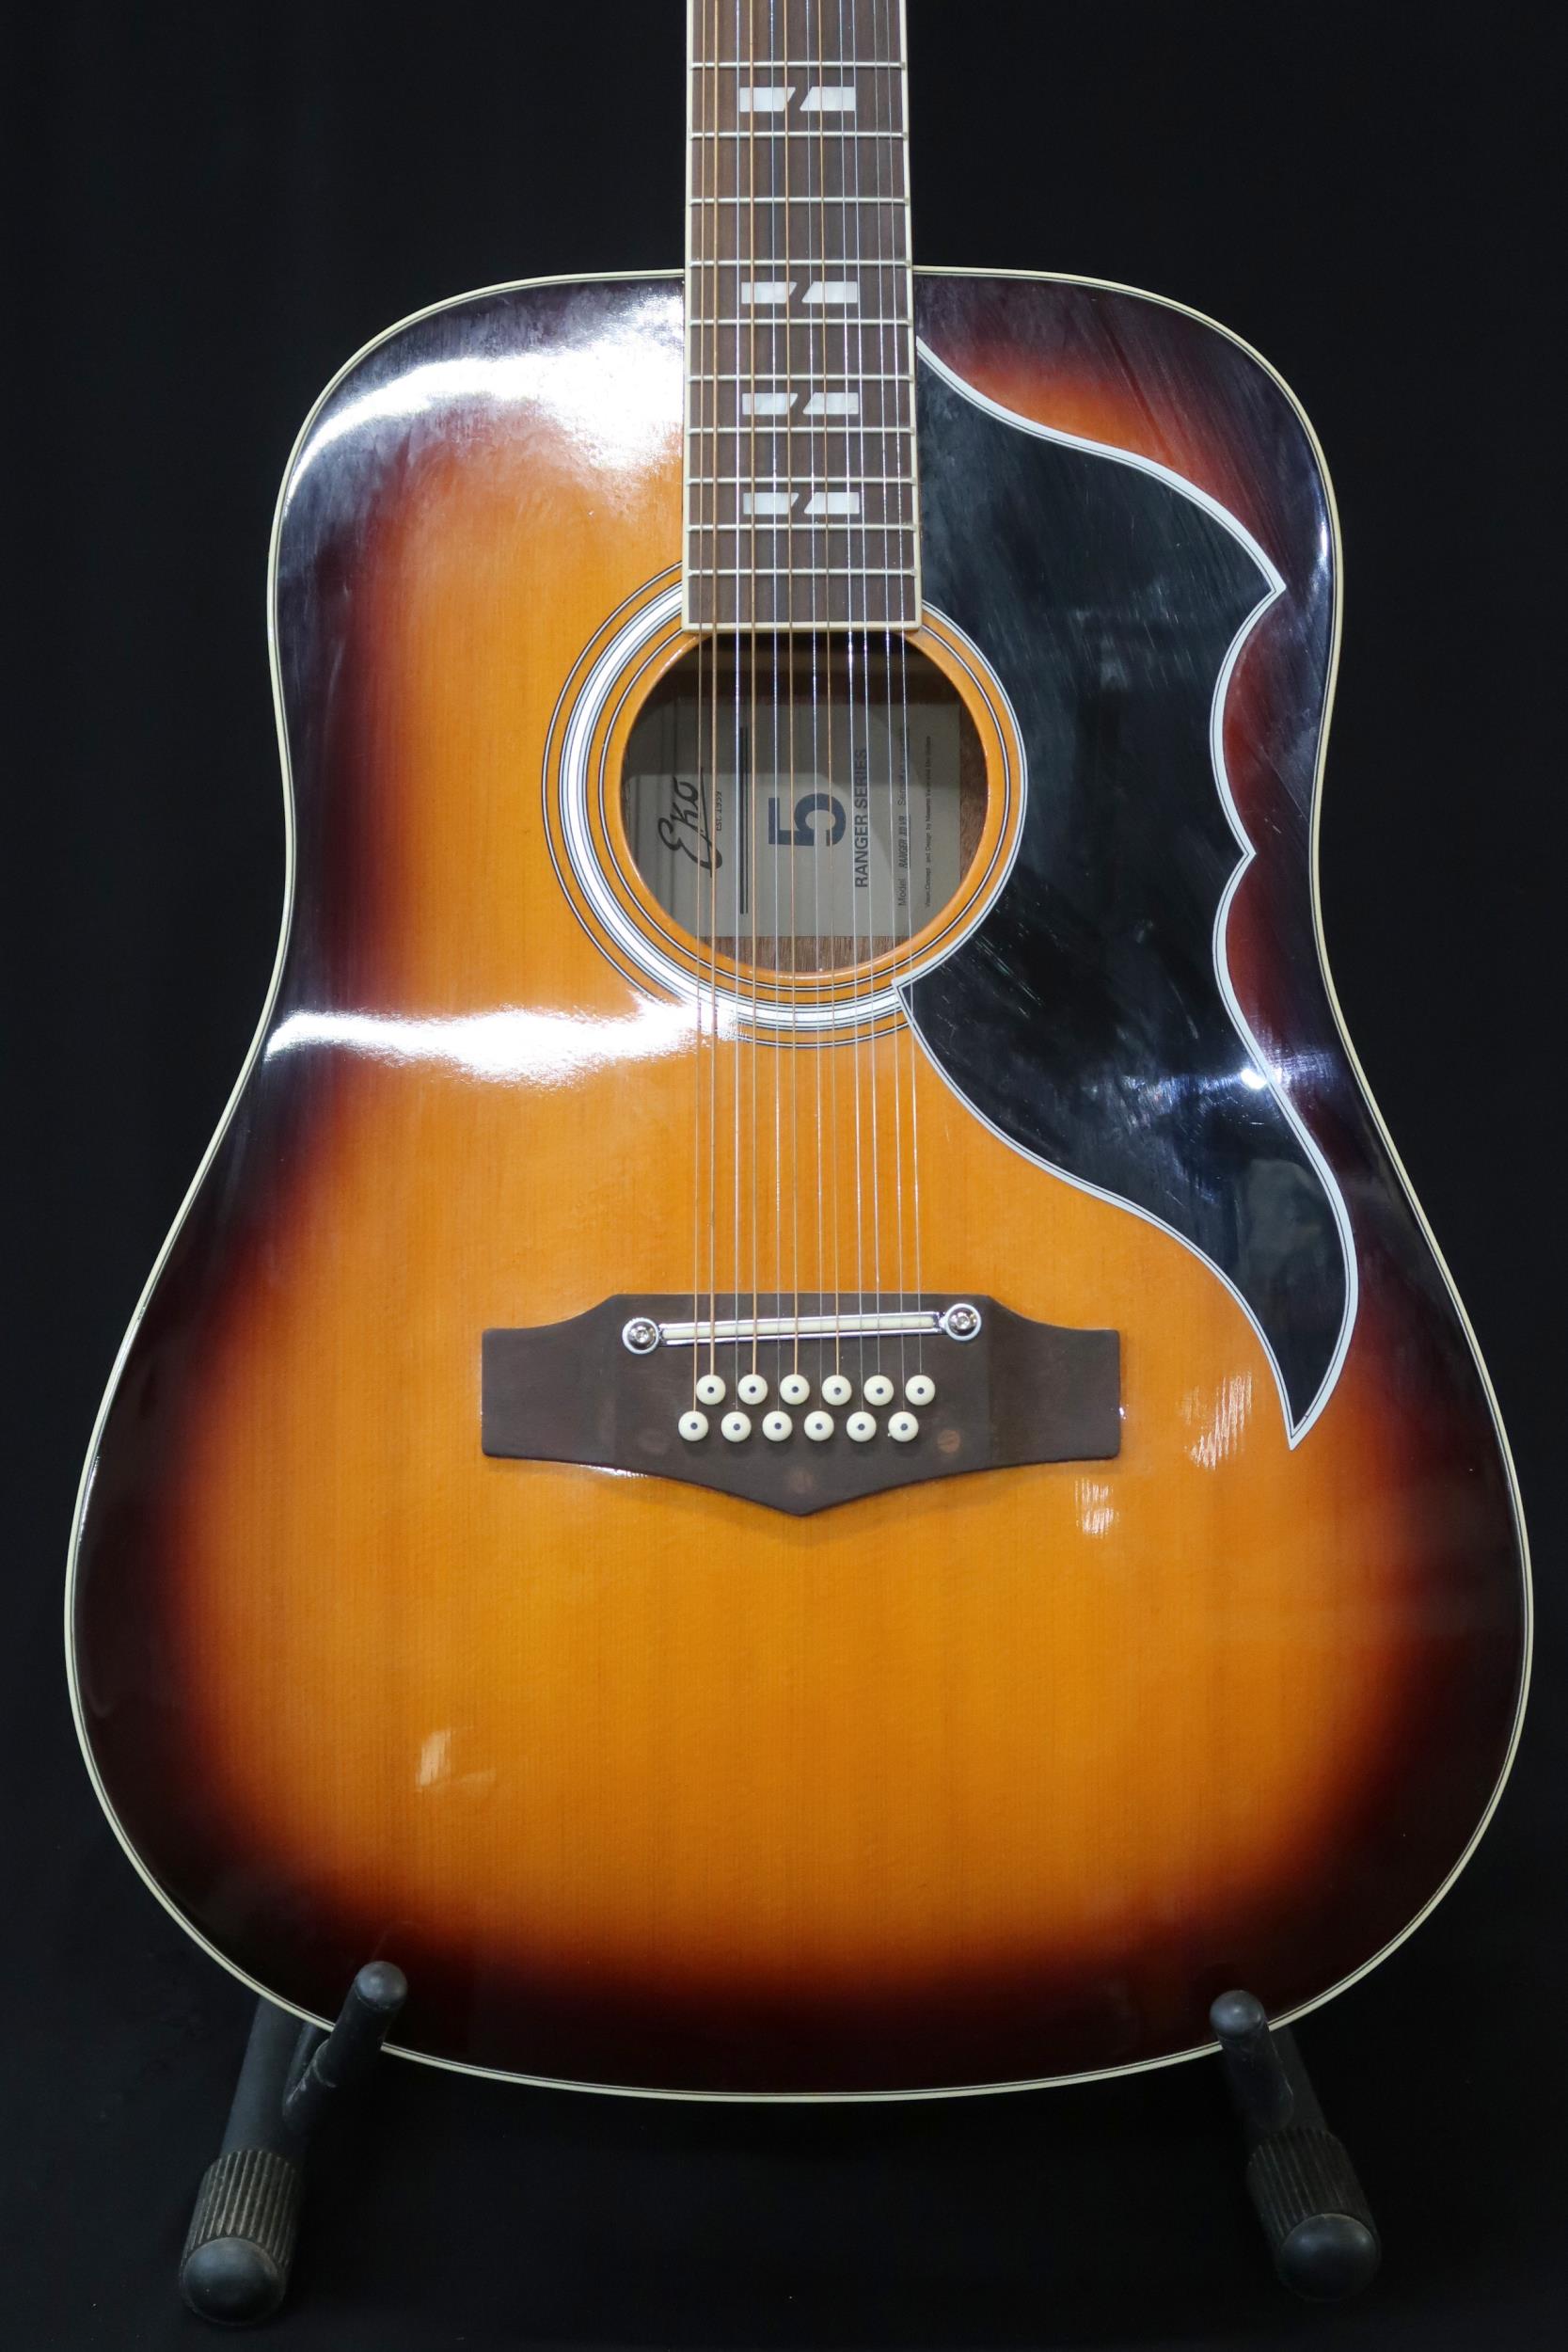 A Echo Ranger 12 string acoustic guitar model XII VR in sunburst, 20 frets serial number Y17081272 - Image 2 of 22